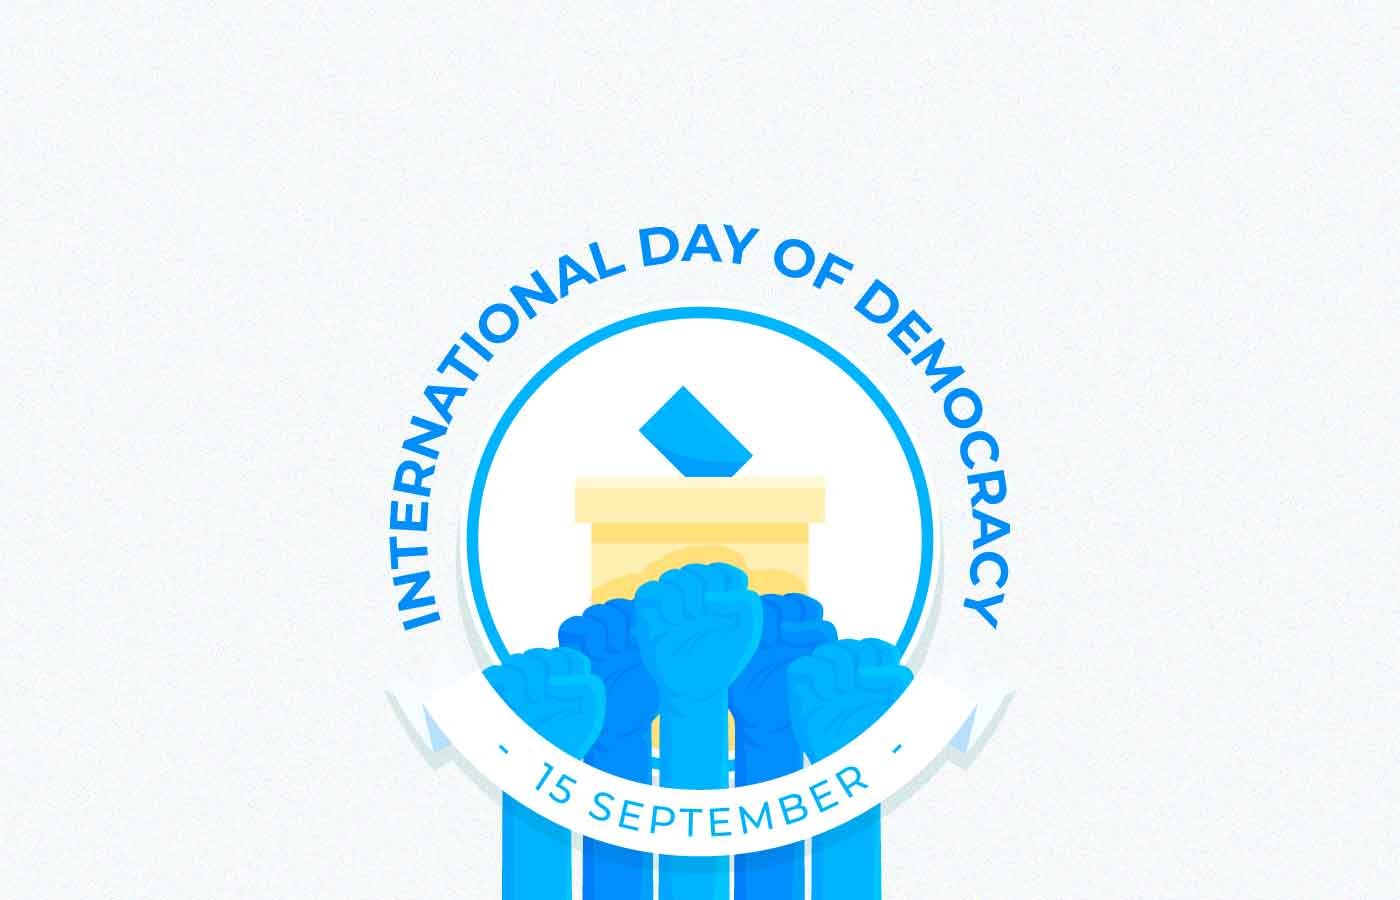 International Day Of Democracy